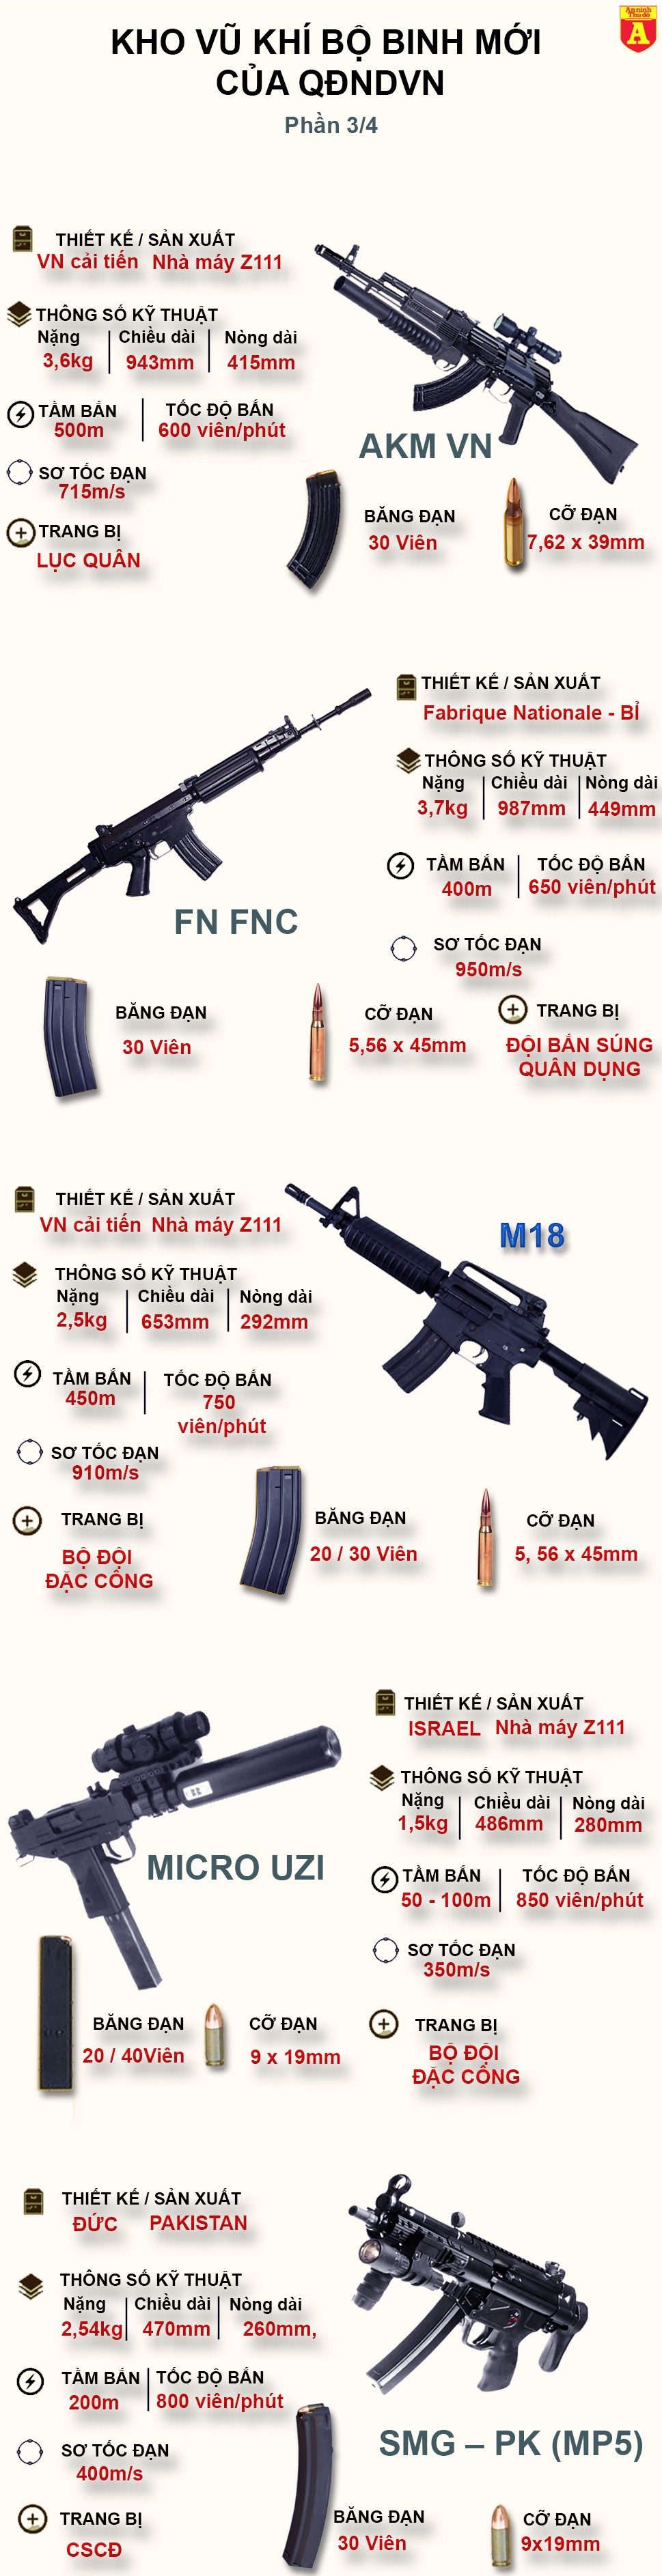 [Infographic] Kinh ngạc với những khẩu súng cực hiện đại Việt Nam vừa trang bị (3) ảnh 2